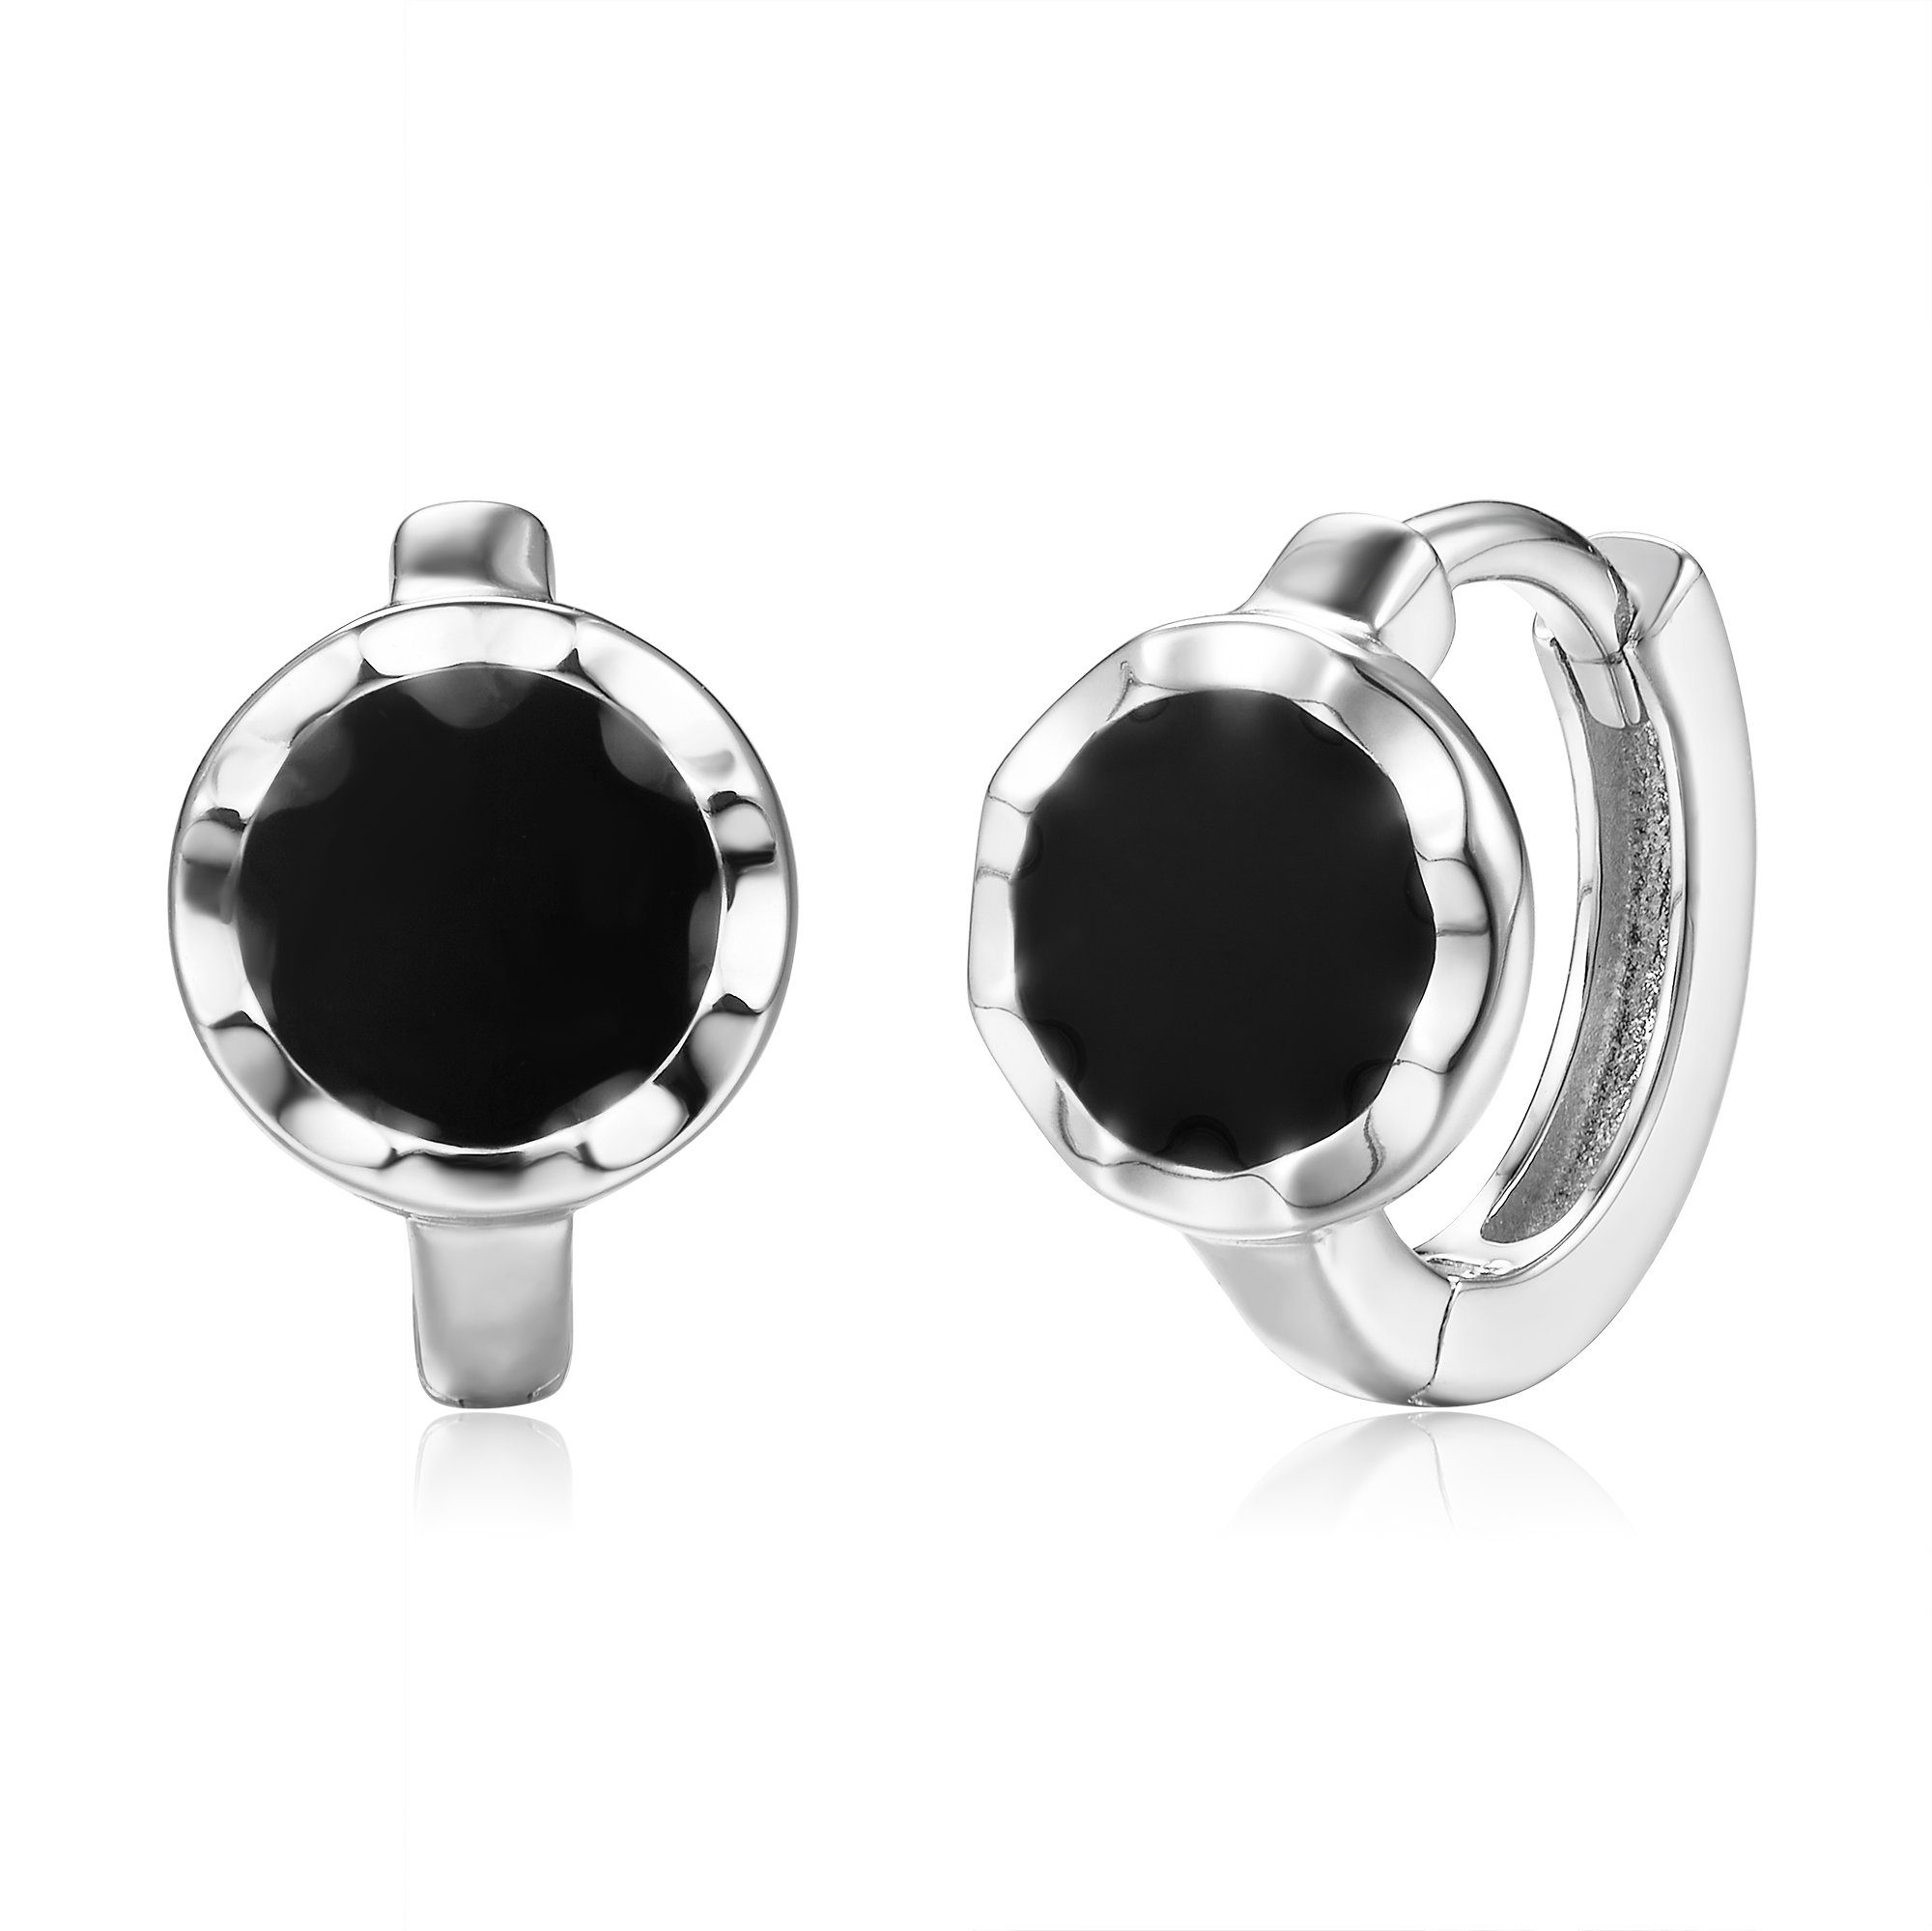 Schöner-SD Paar Creolen Silberohrringe Klappcreolen mit Emaille rund schwarz Kreis, 925 Silber